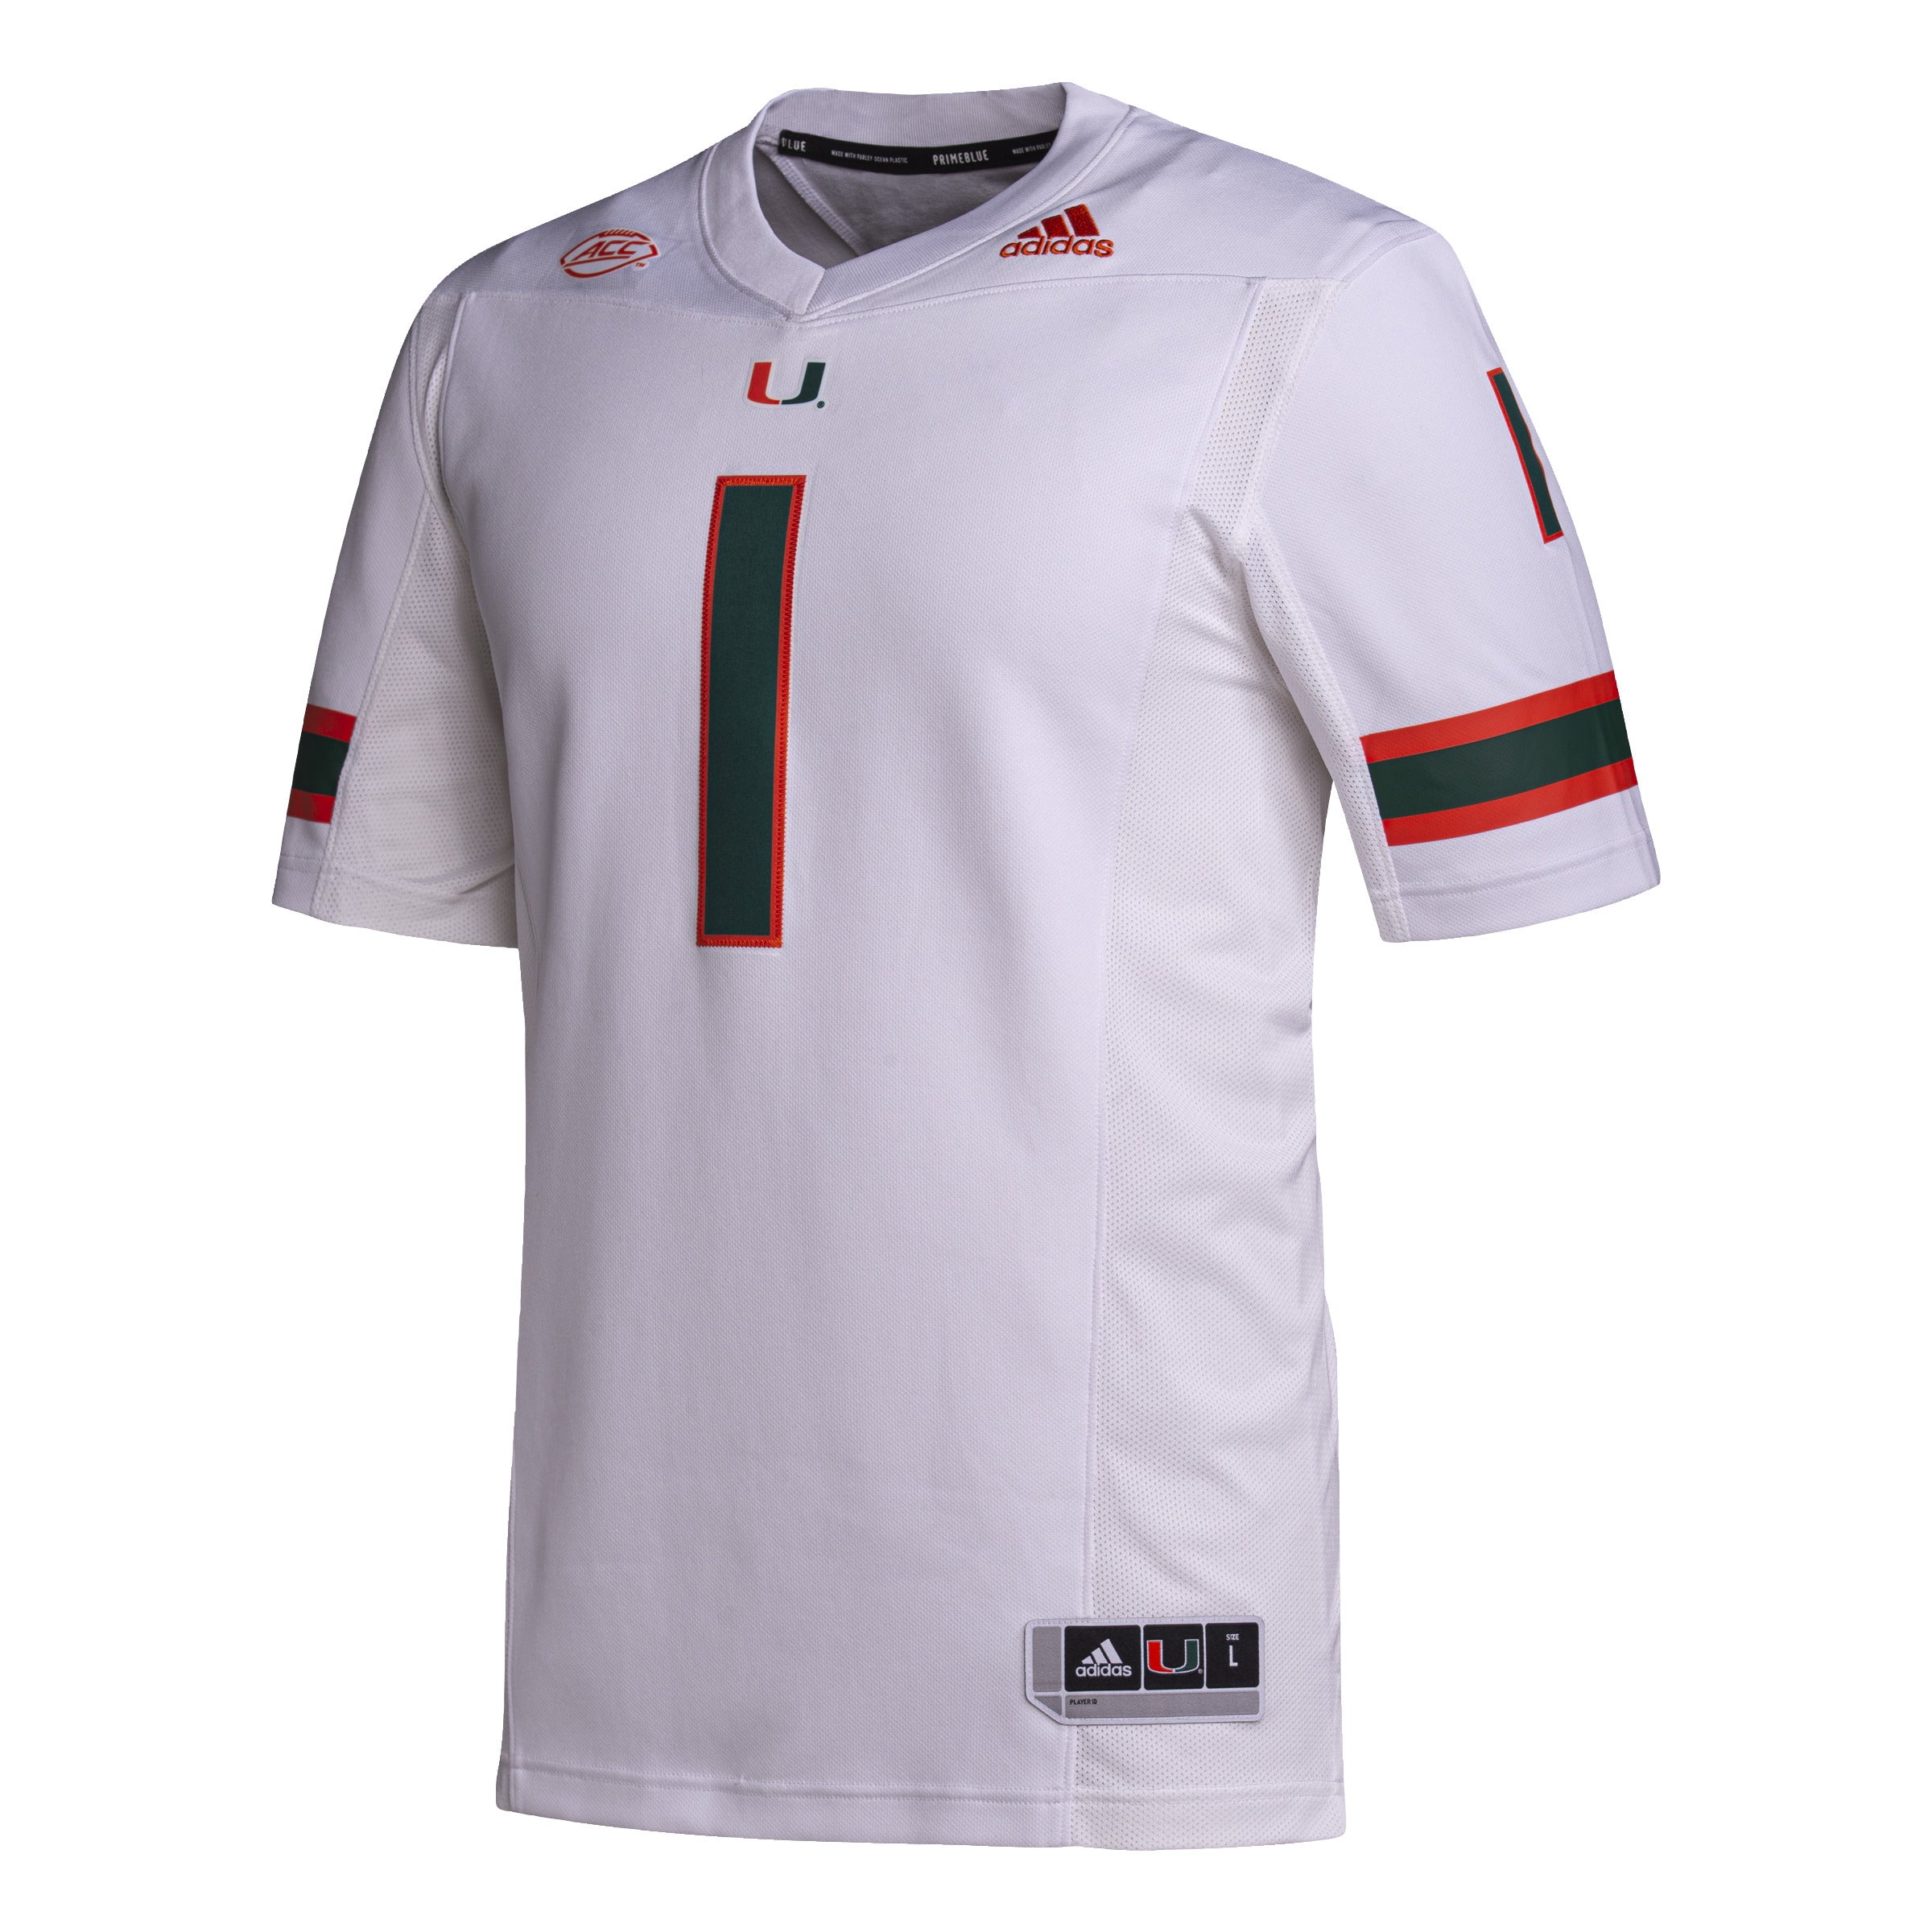 Miami Hurricanes adidas Premier Football Jersey #1 - White